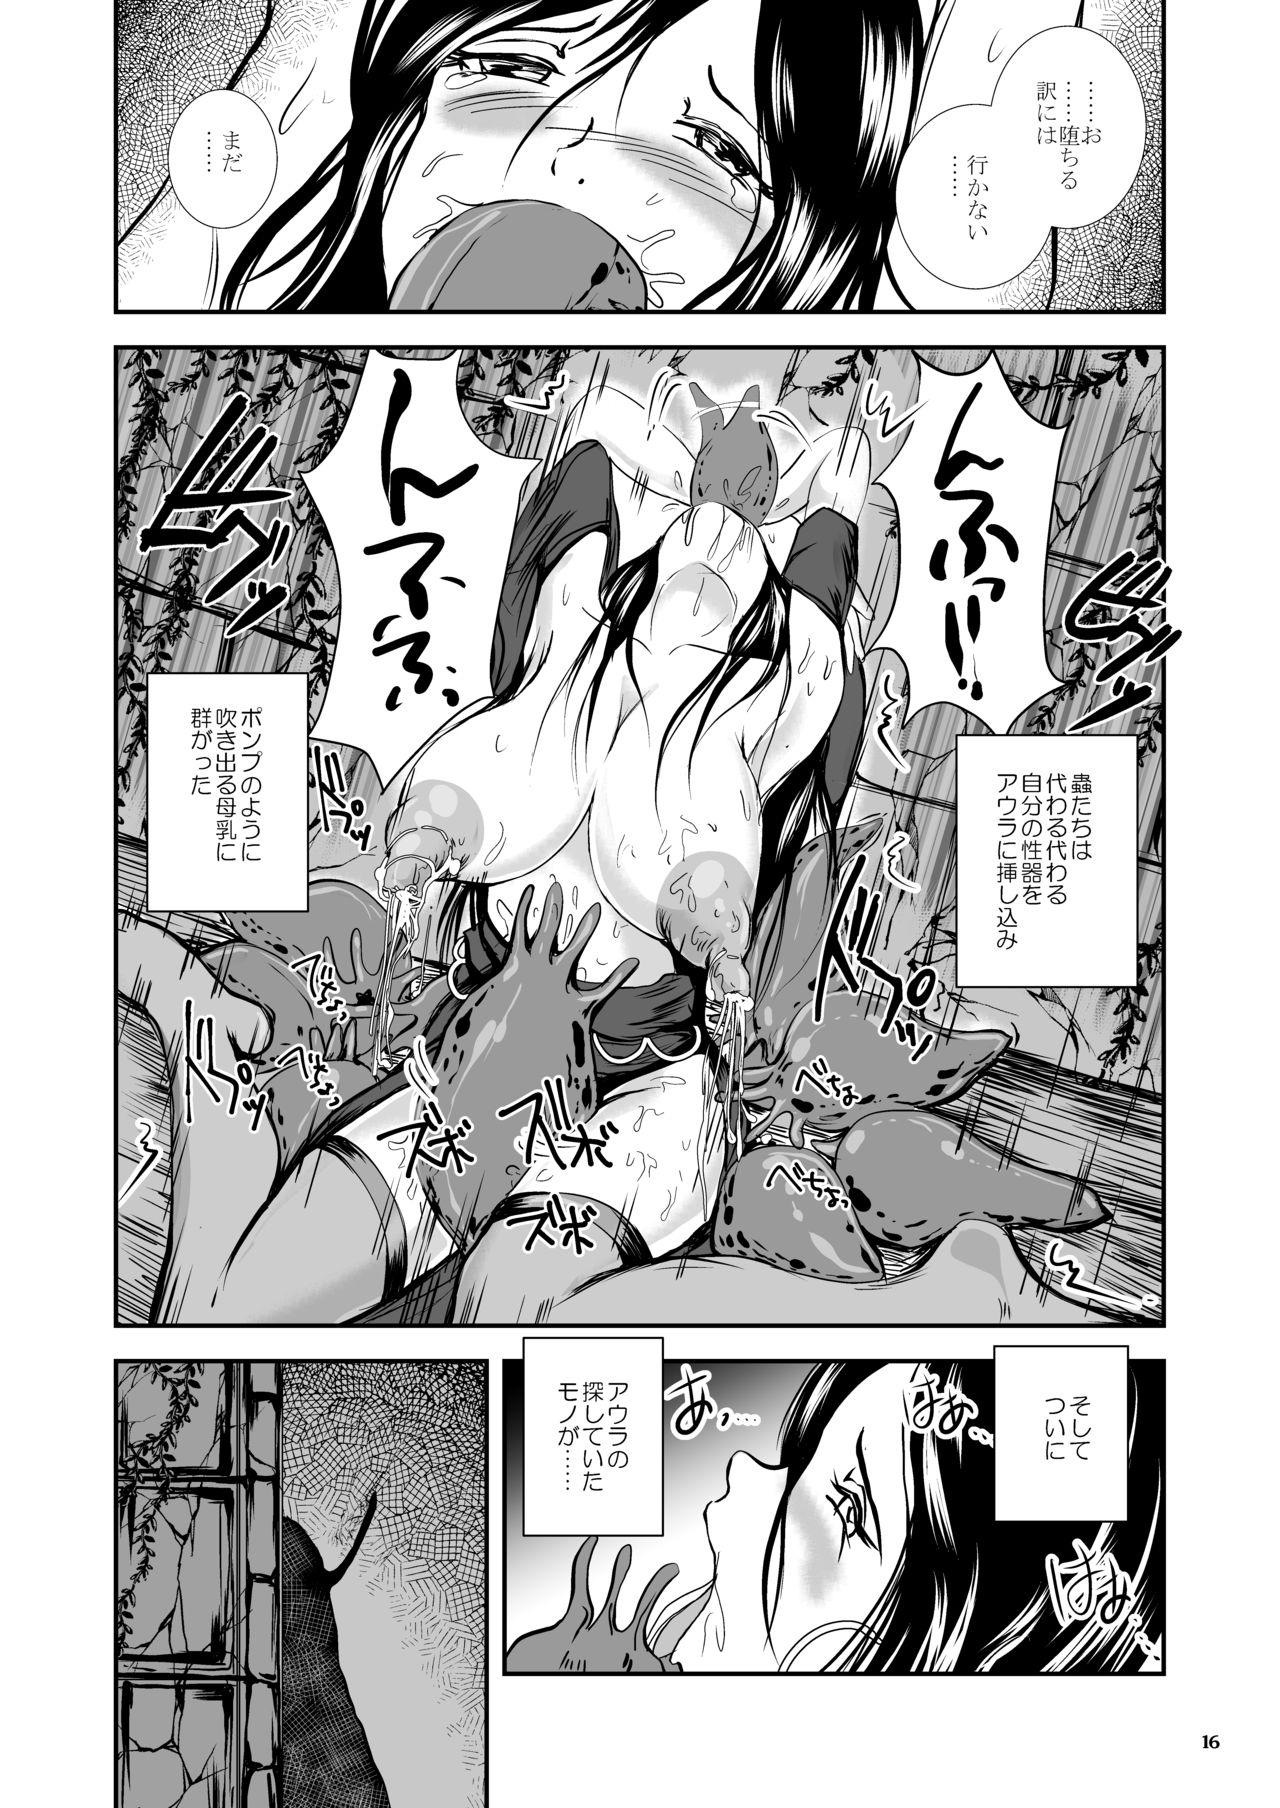 Oonamekuji to Kurokami no Mahoutsukai - Parasitized Giant Slugs V.S. Sorceress of the Black Hair as Aura 15